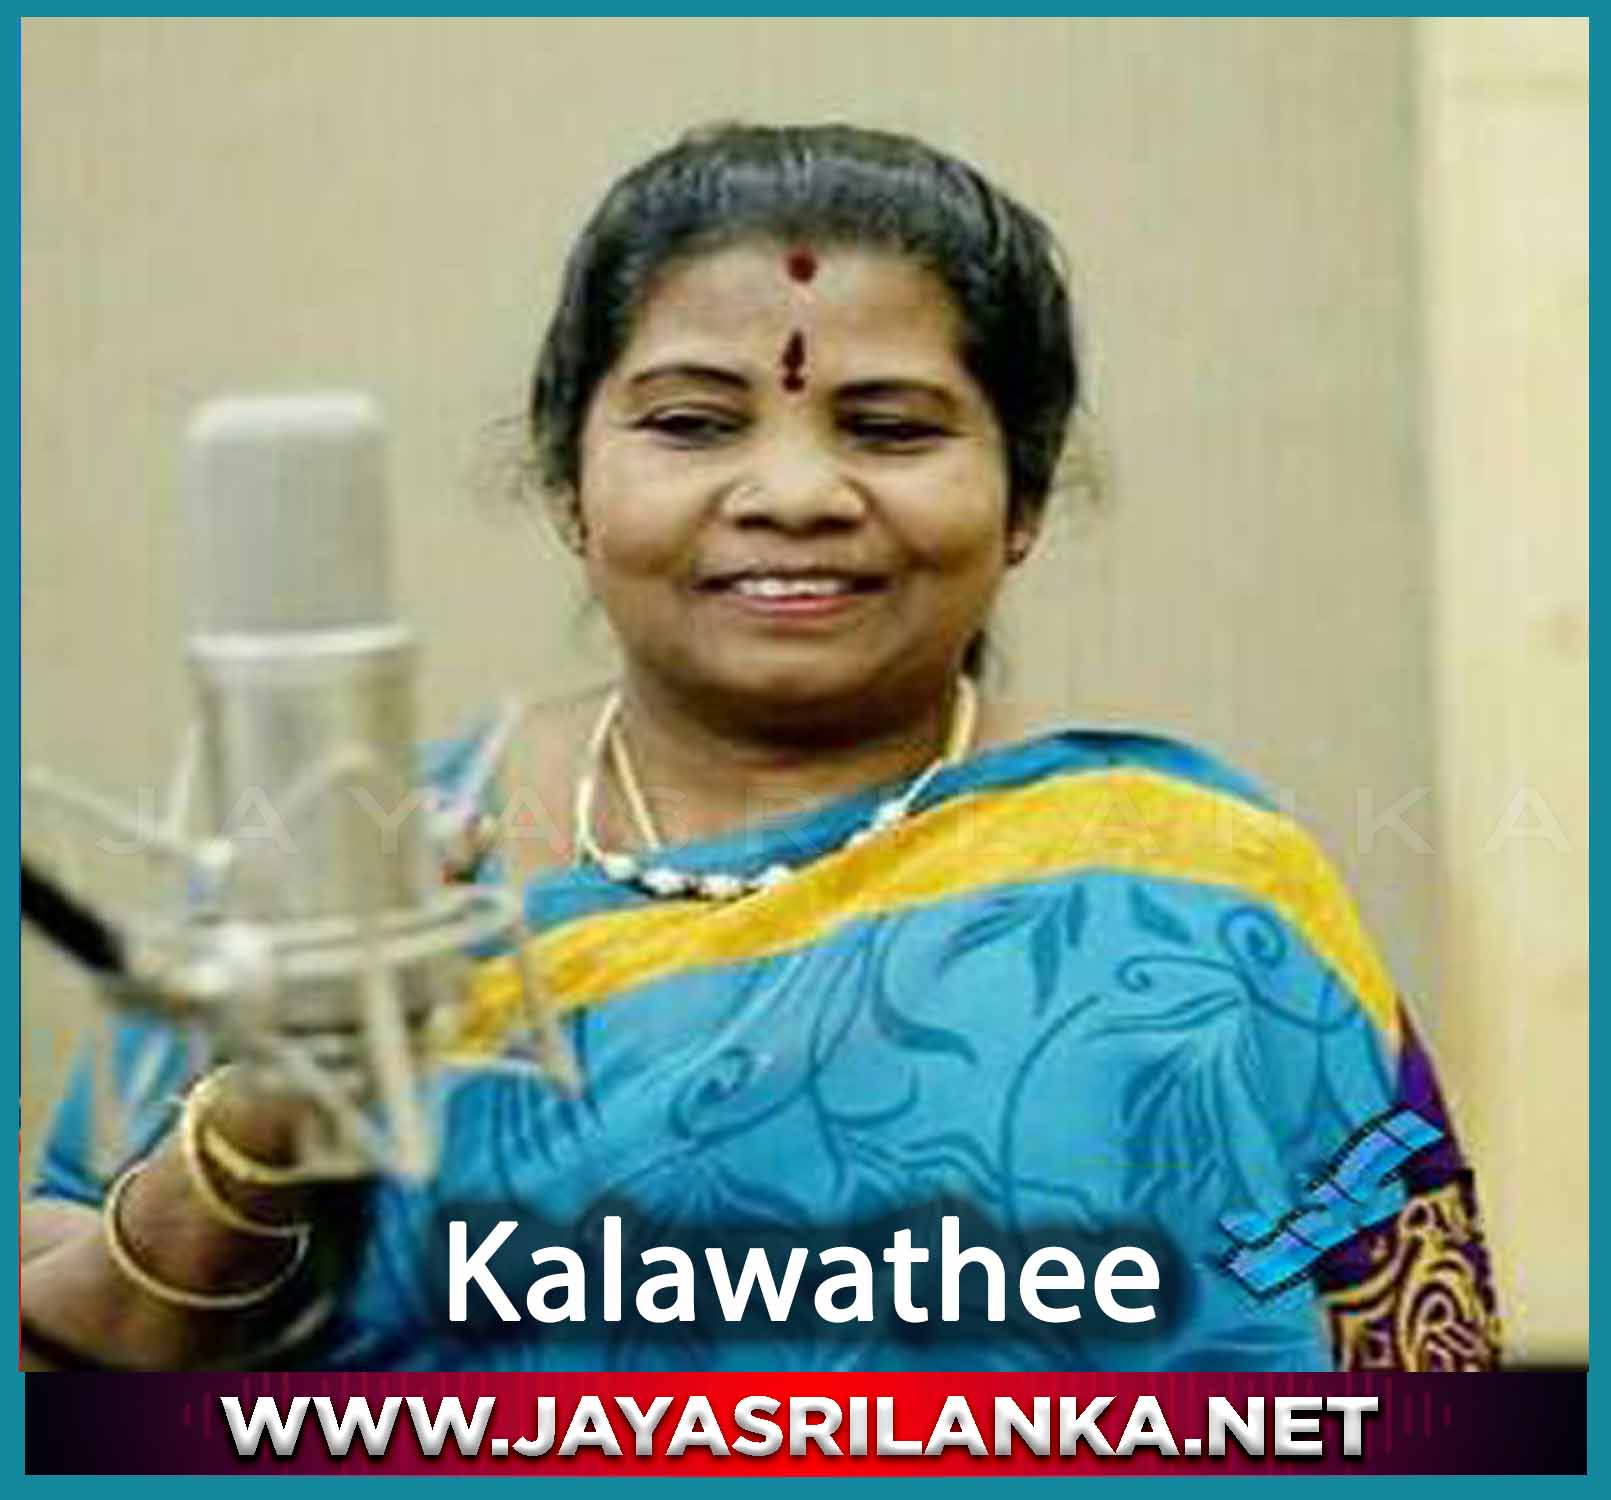 Alaya Himee Mage Raja - Kalawathee mp3 Image